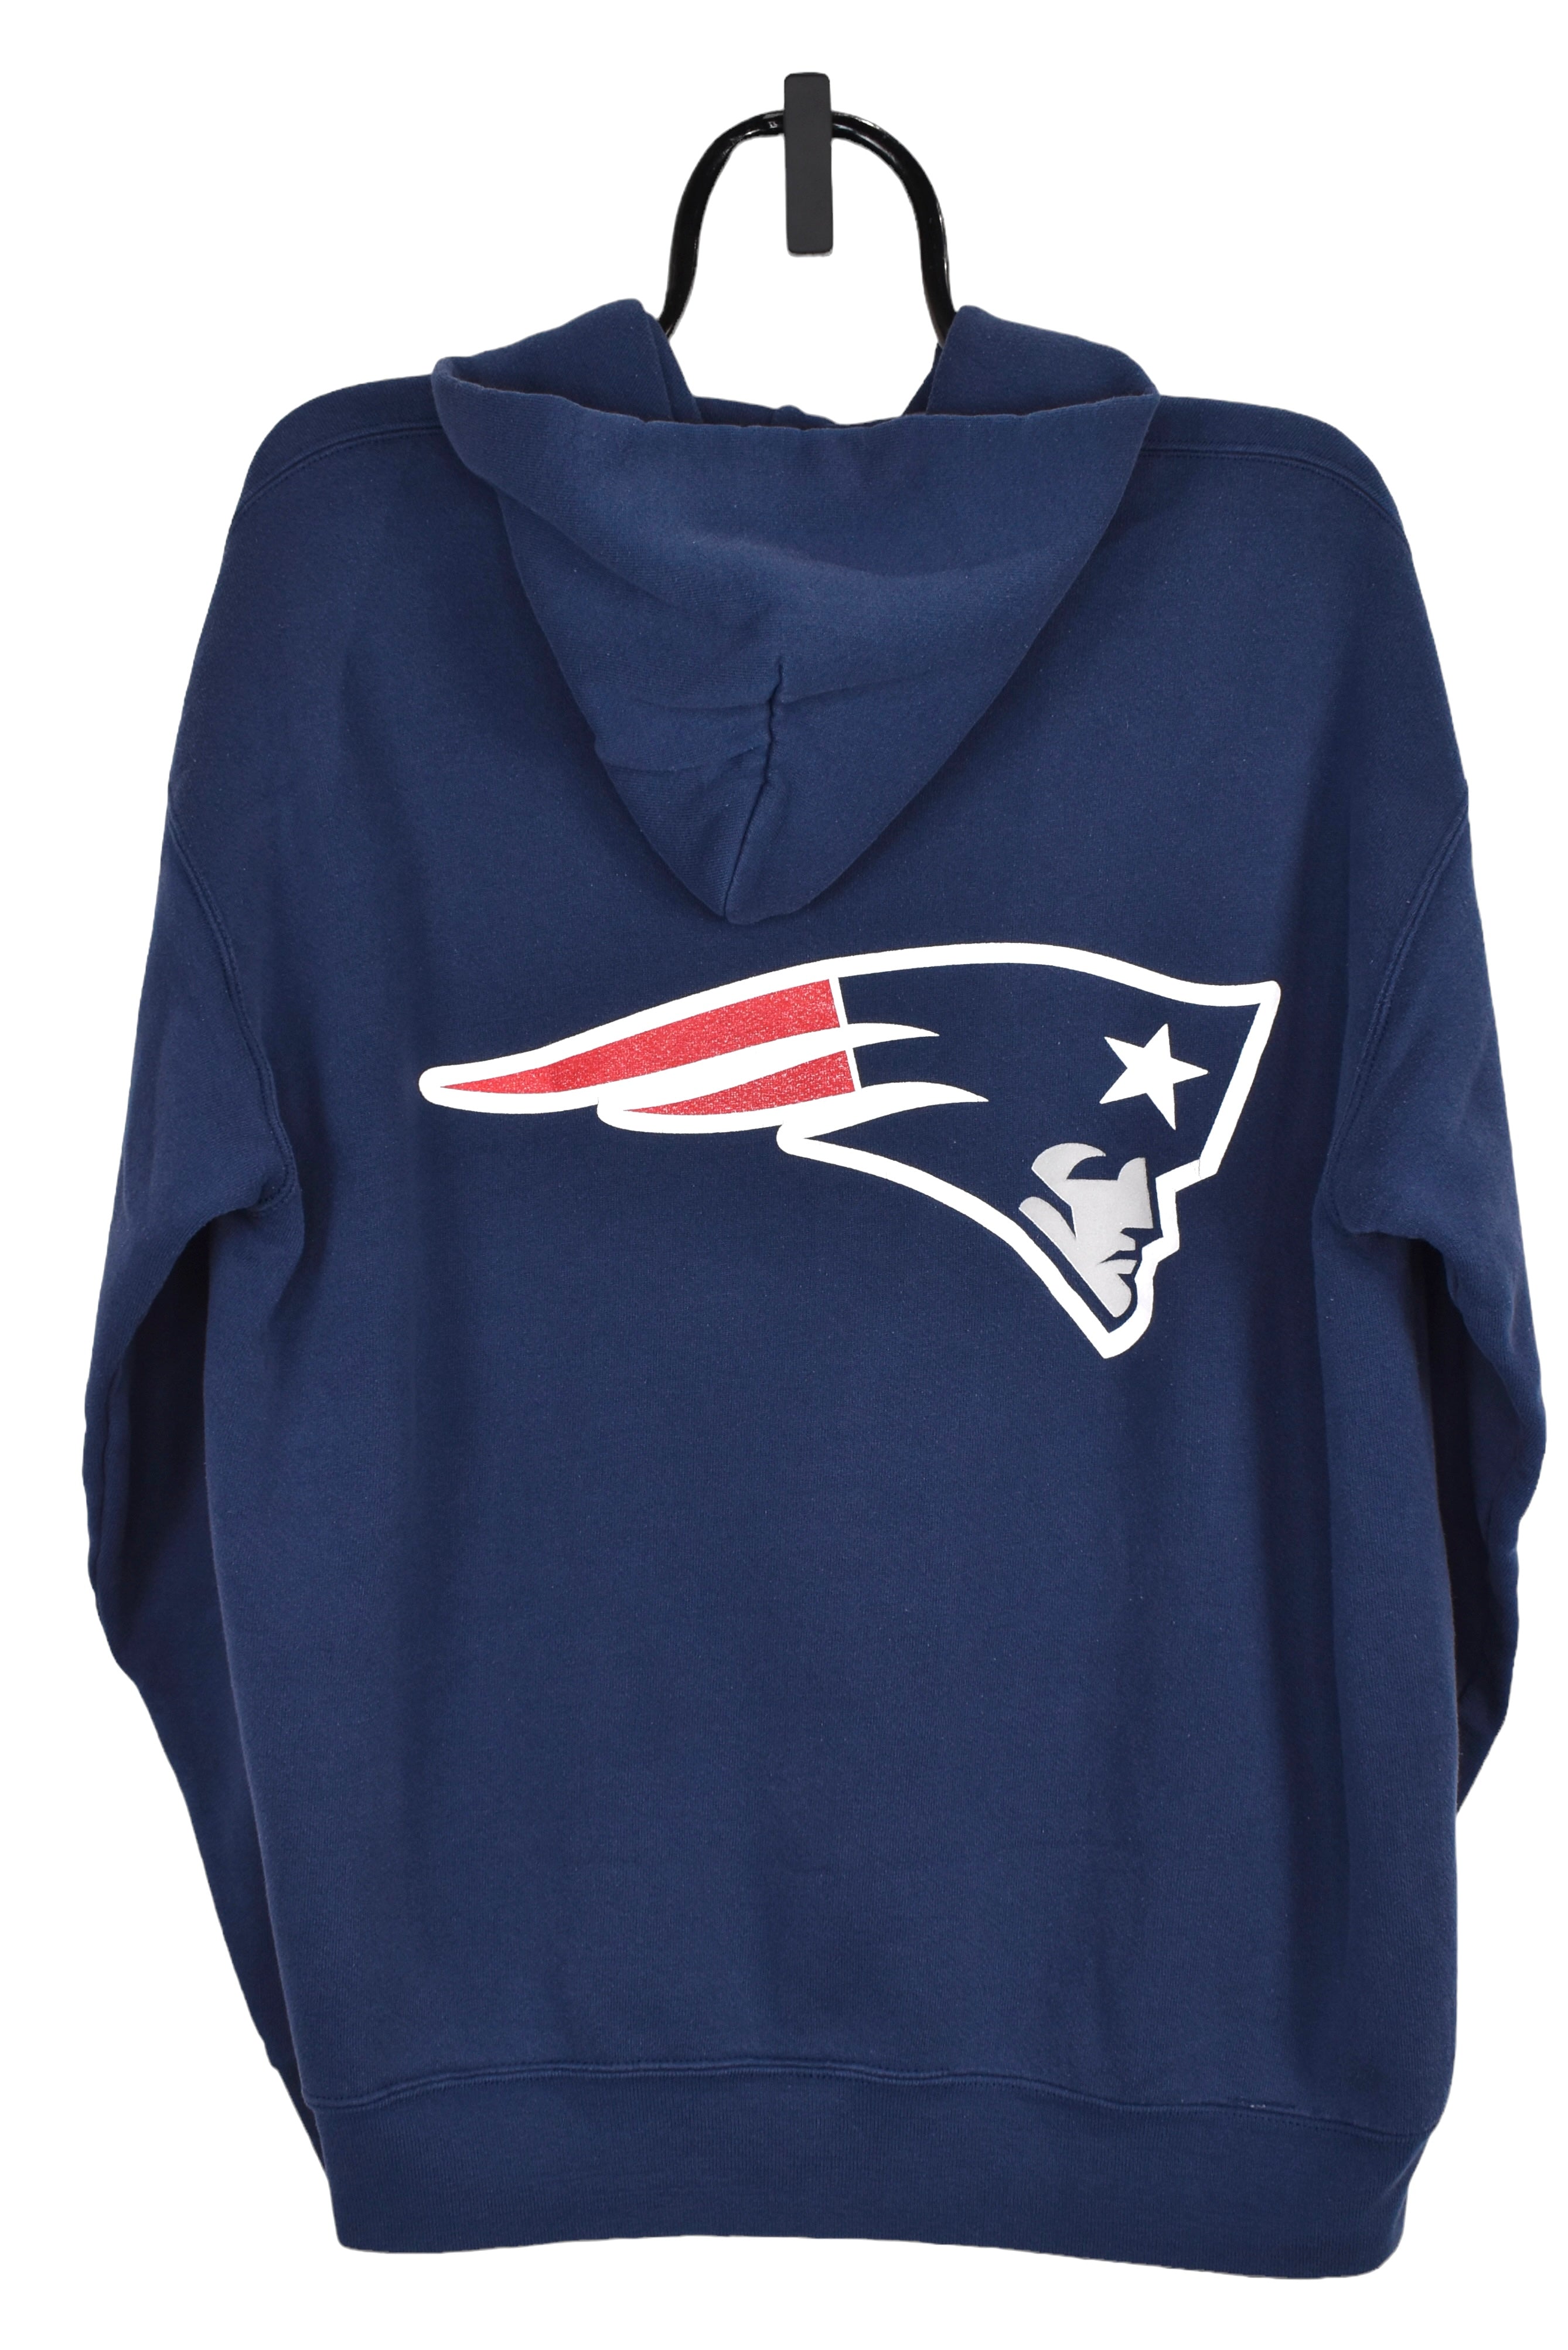 Vintage New England Patriots hoodie (XL), navy NFL graphic hoodie